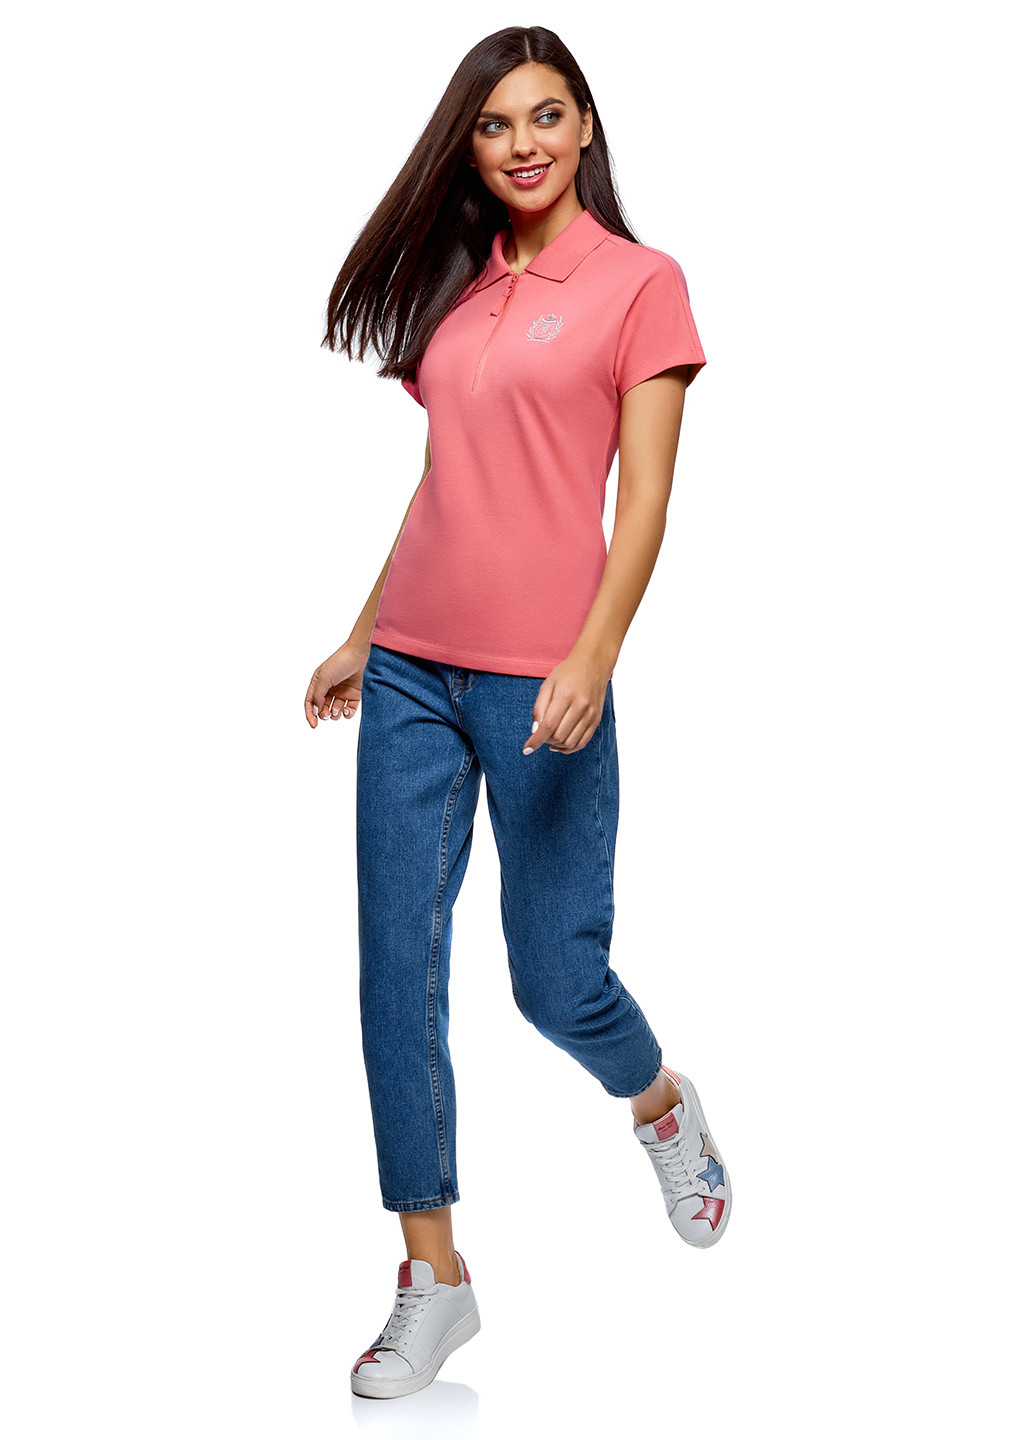 Розовая женская футболка-поло Oodji с логотипом